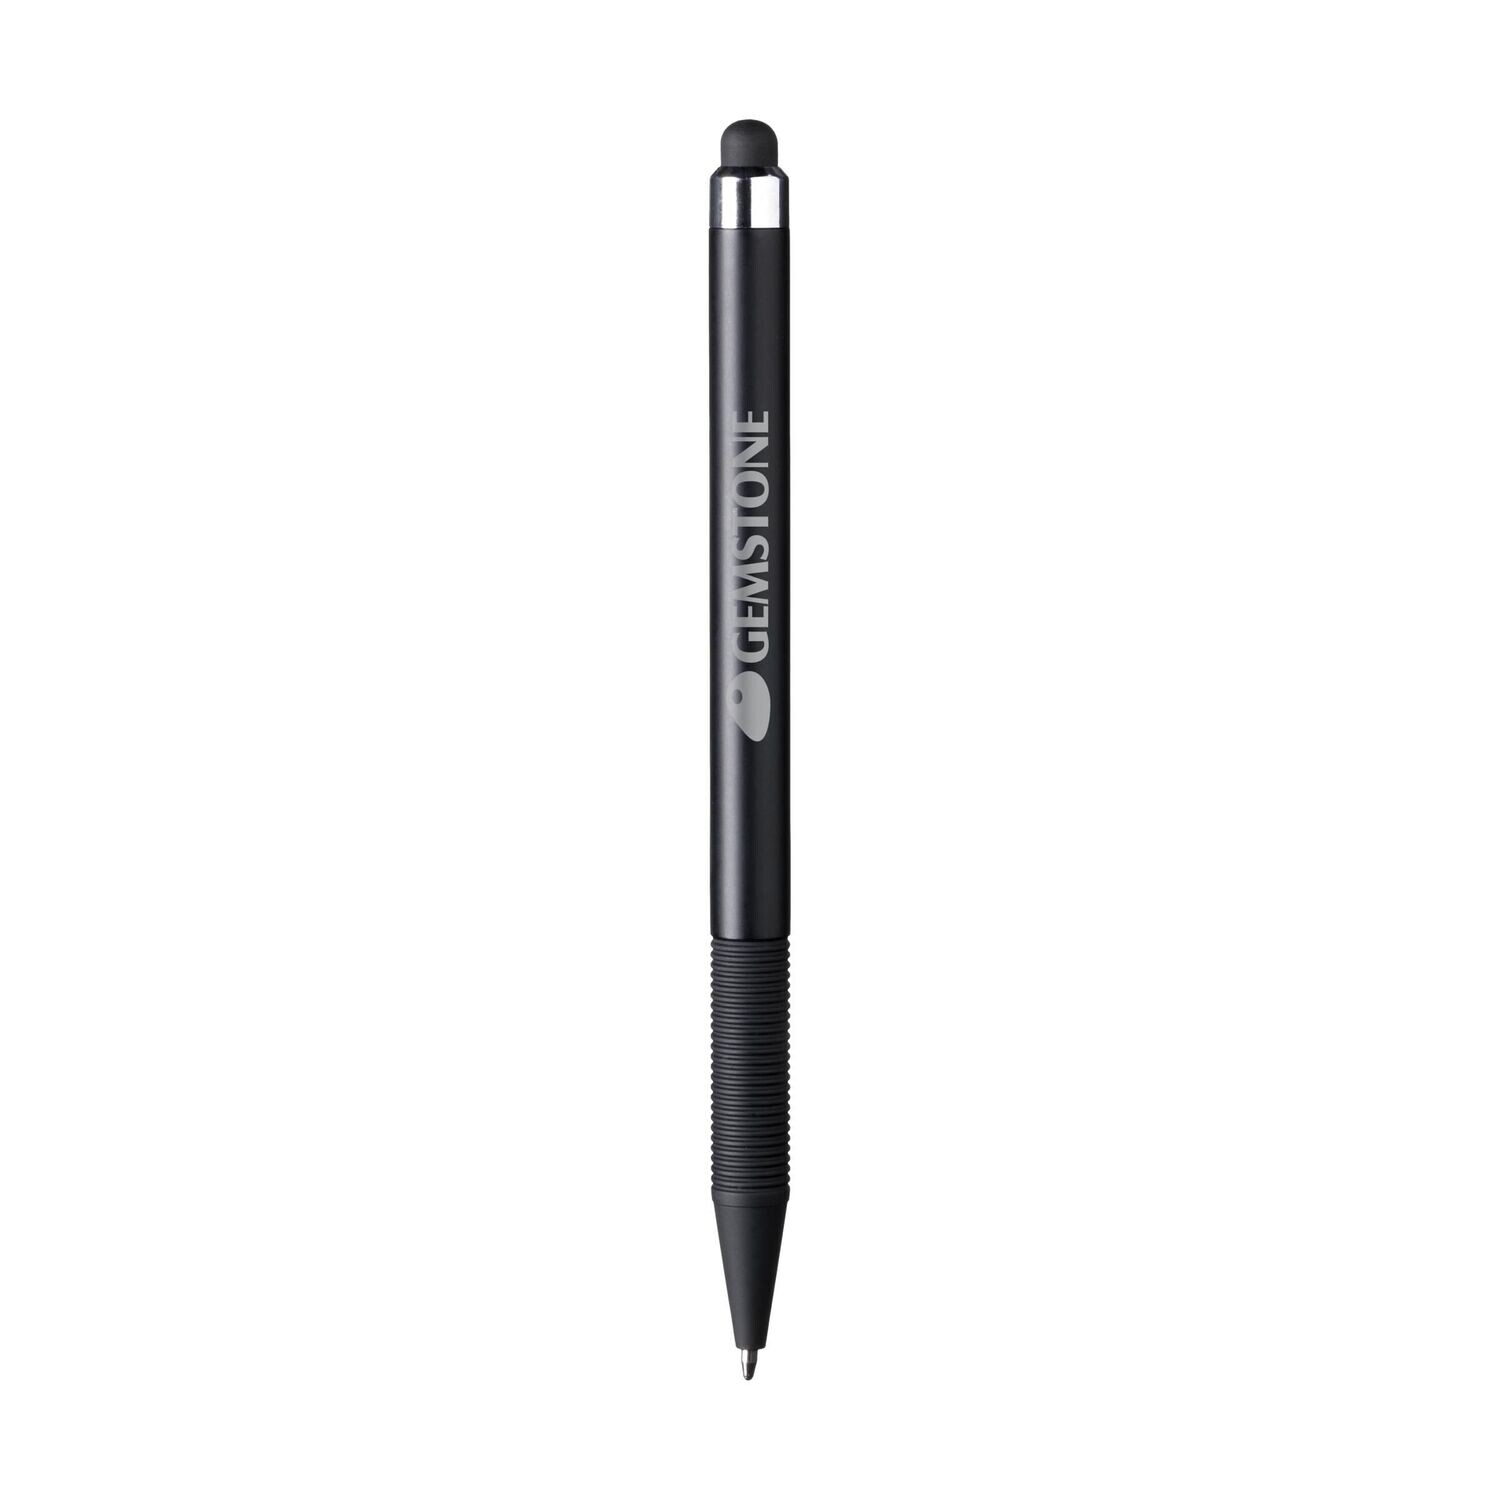 TouchDown stylus penn